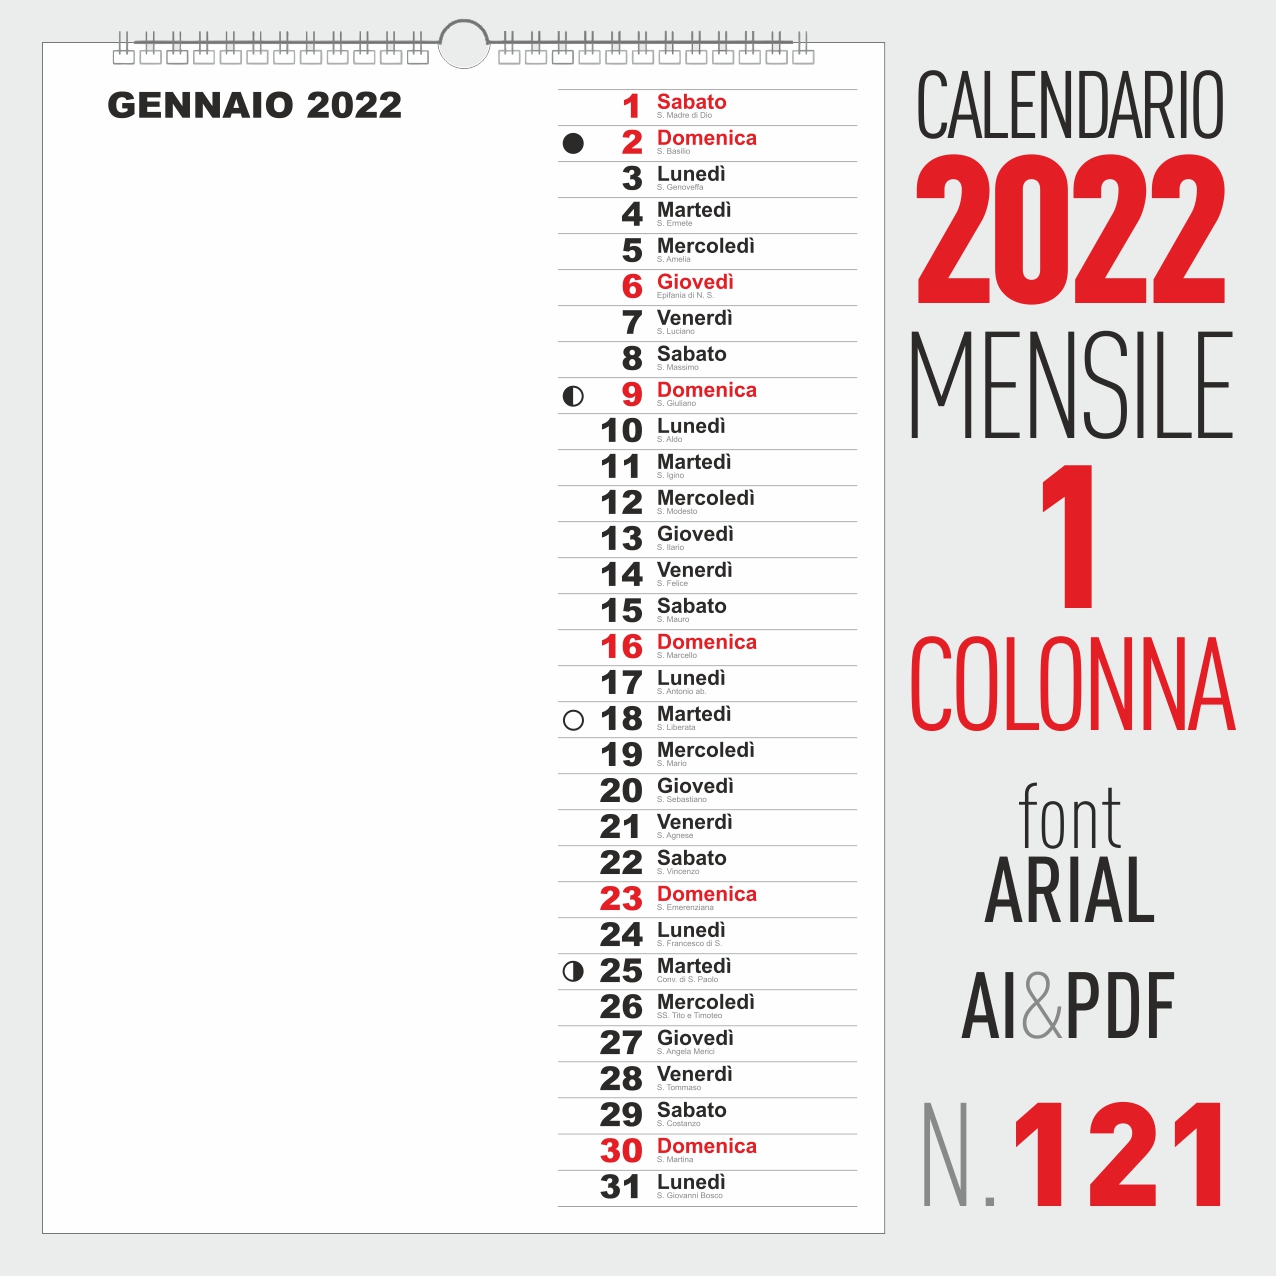 calendario 2022 mensile